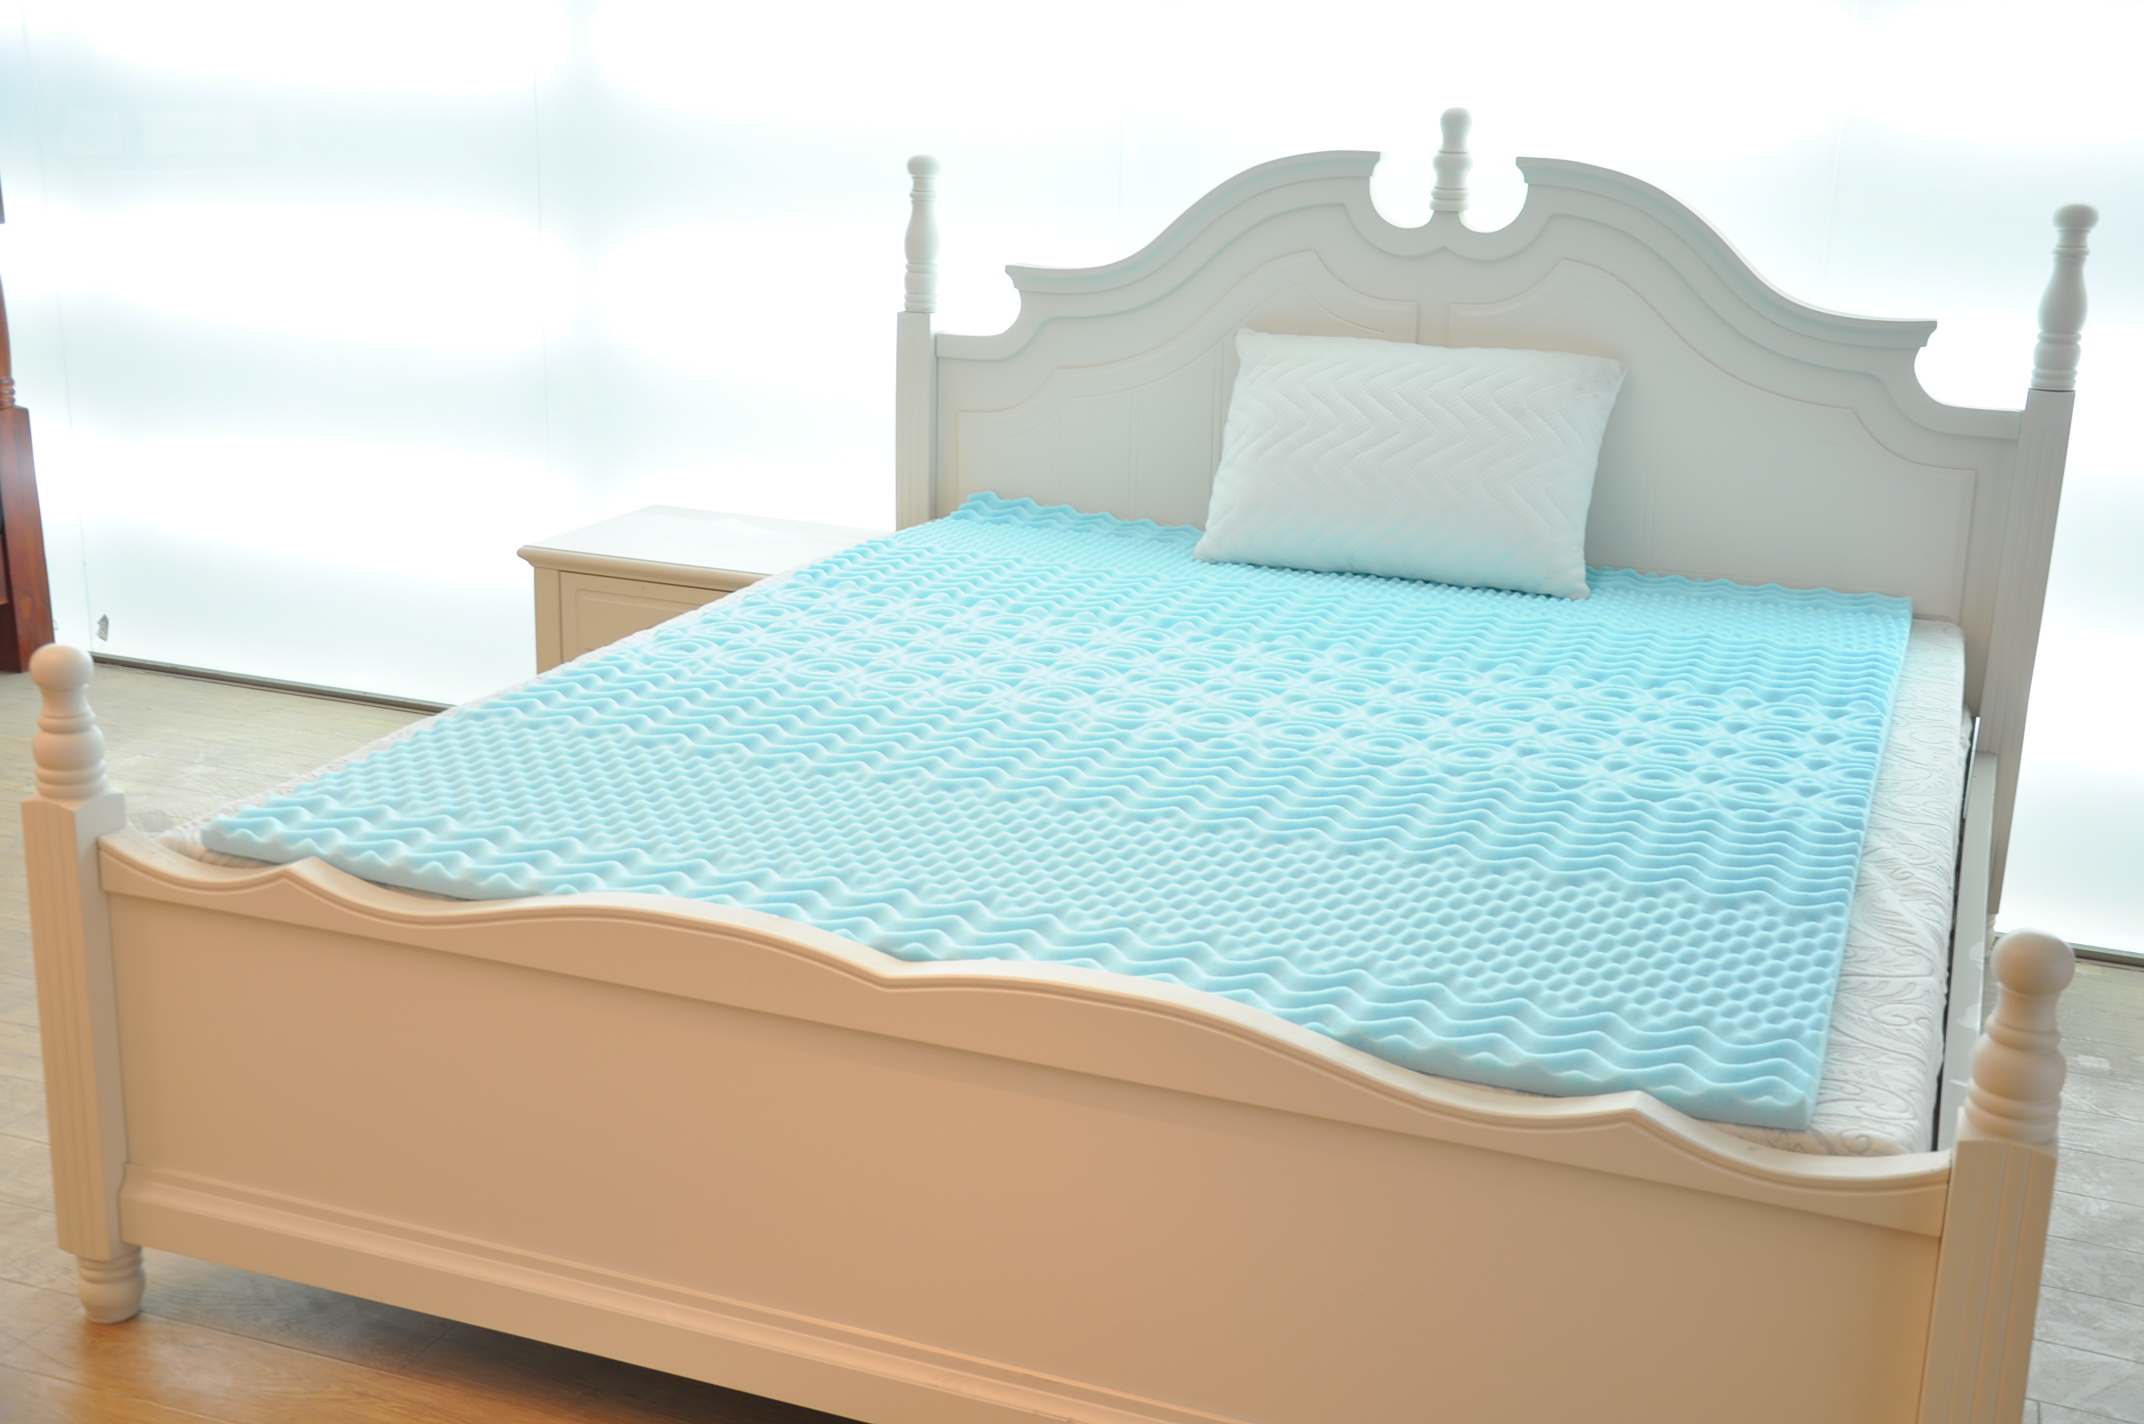 comfort foam mattress topper